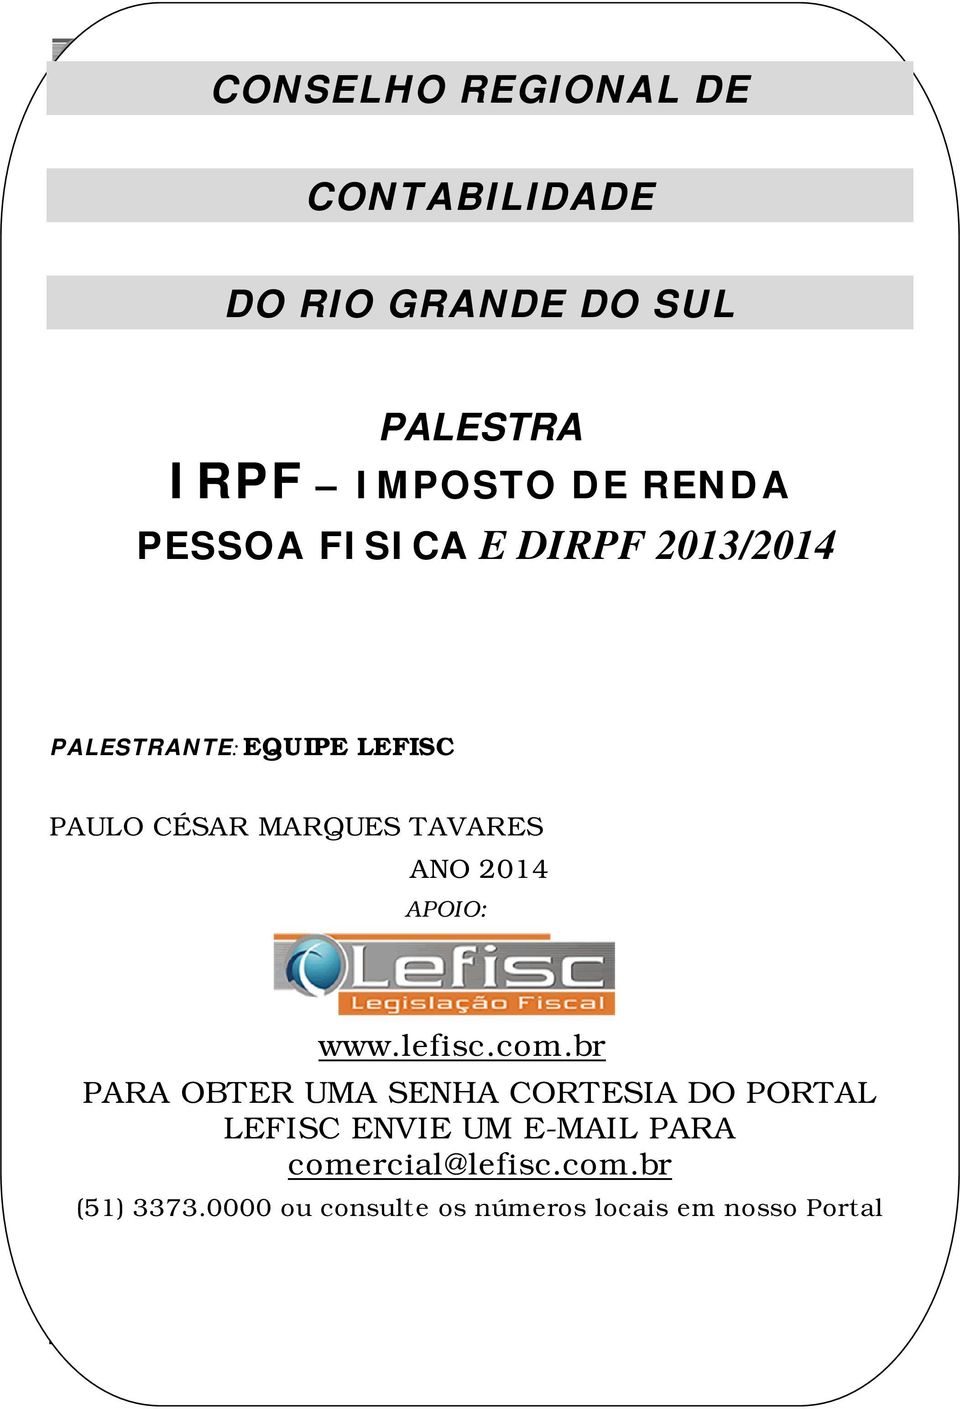 2013/2014 PALESTRANTE: EQUIPE LEFISC ATUALIZAÇÃO PAULO CÉSAR MARQUES TAVARES DE ANO 2014 APOIO: www.lefisc.com.